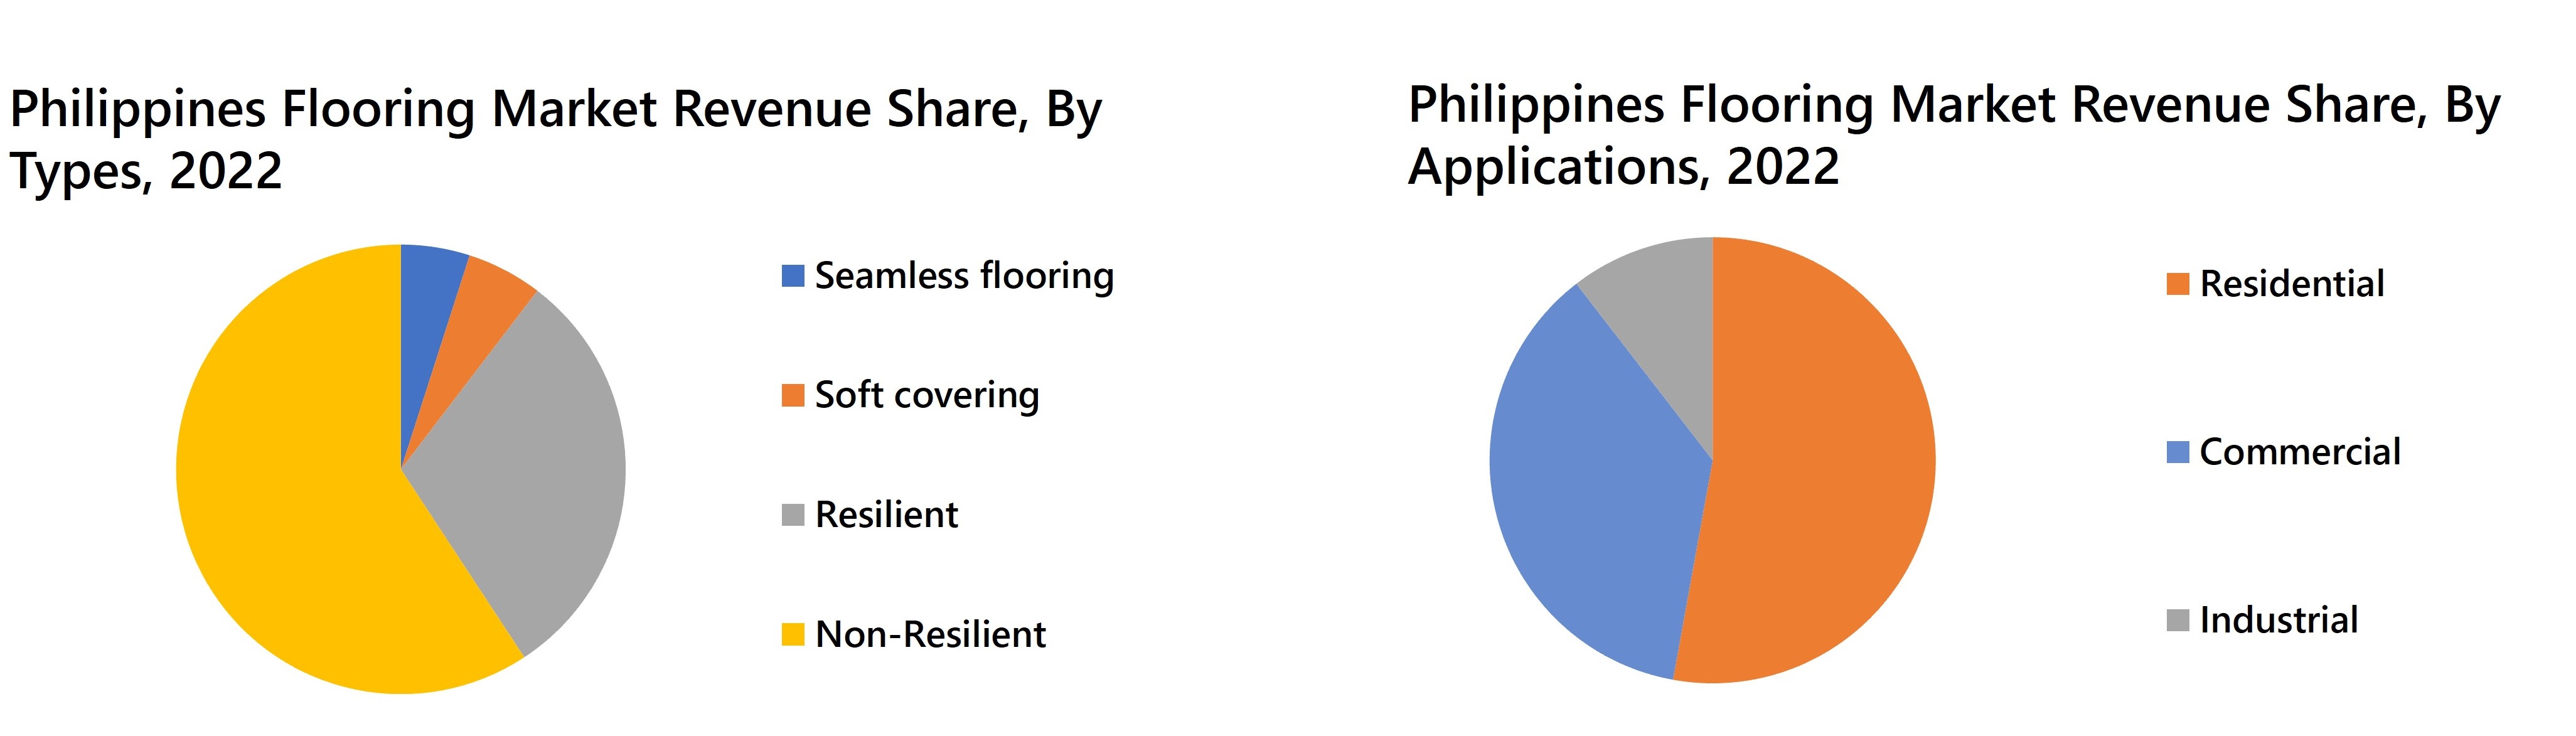 Philippines Flooring Market Revenue Share